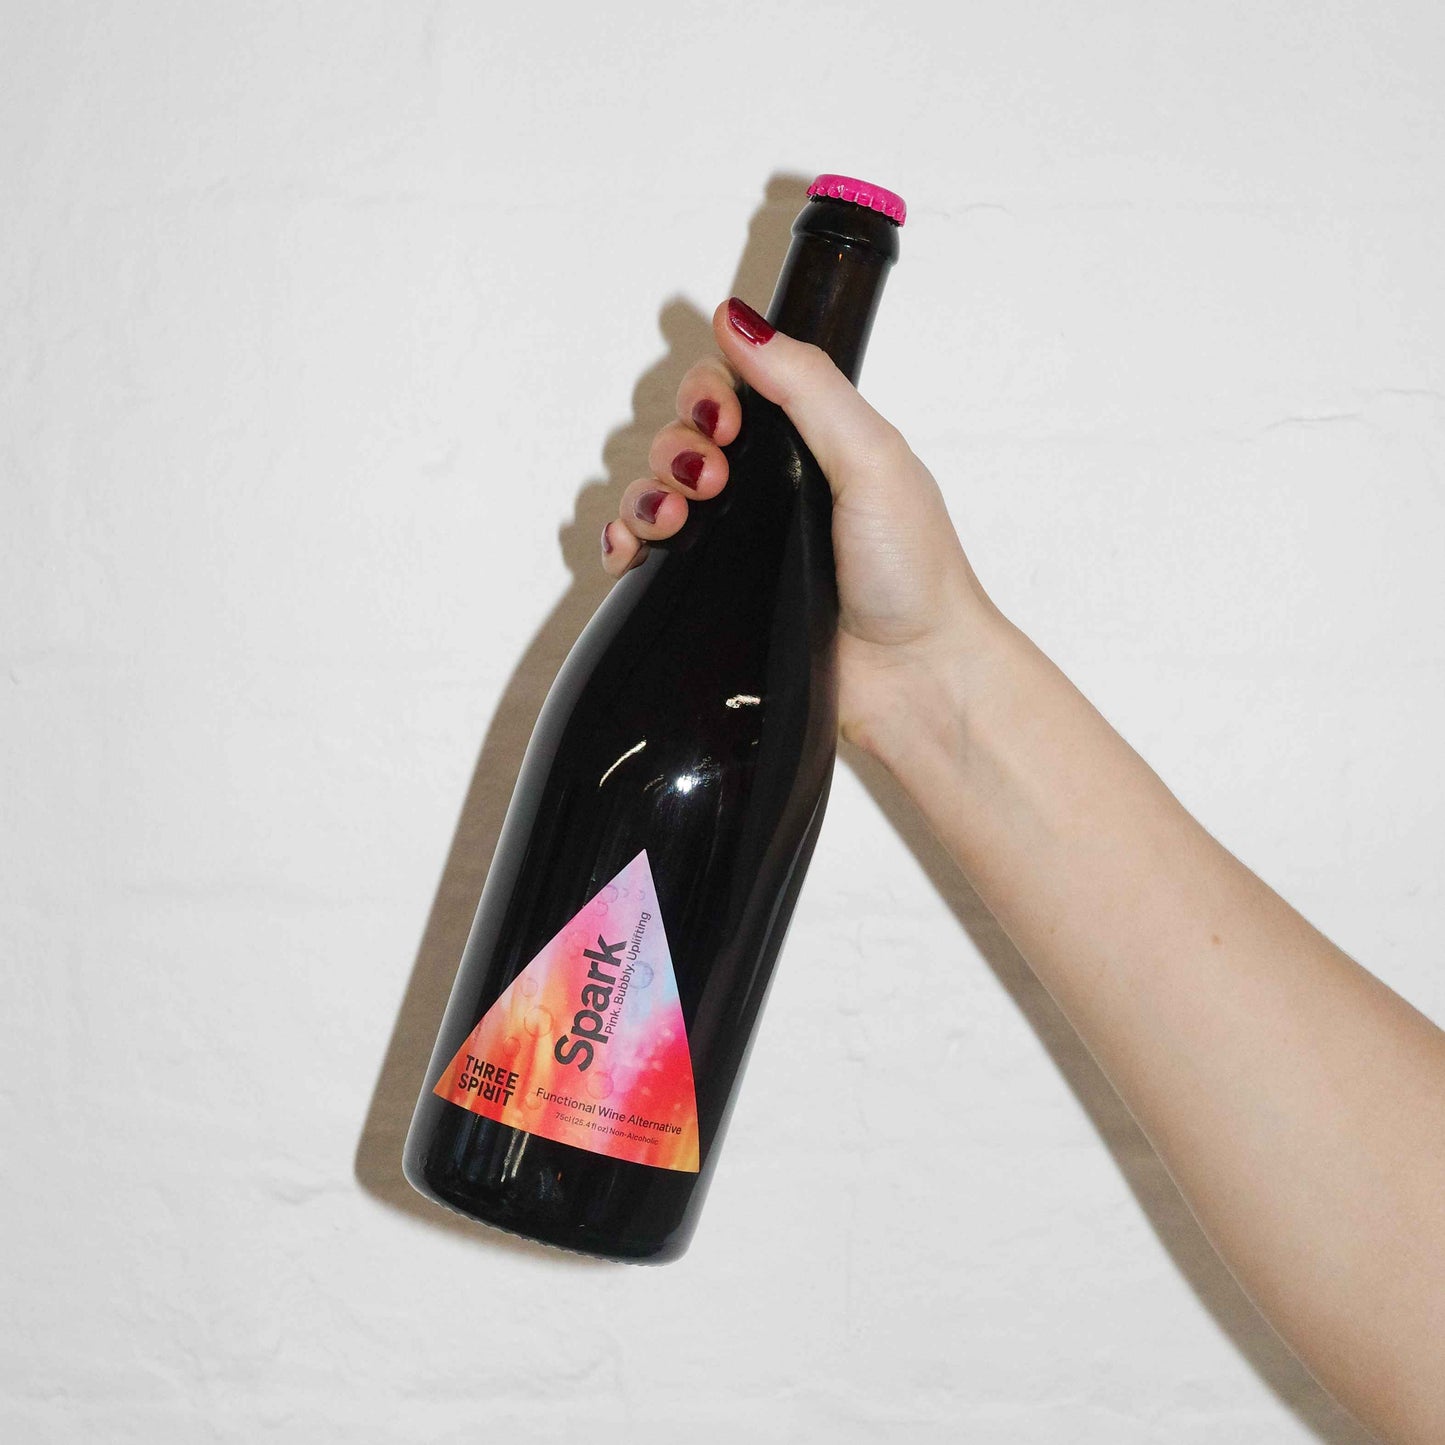 Blurred Vines, Spark - Non-alcoholic Wine